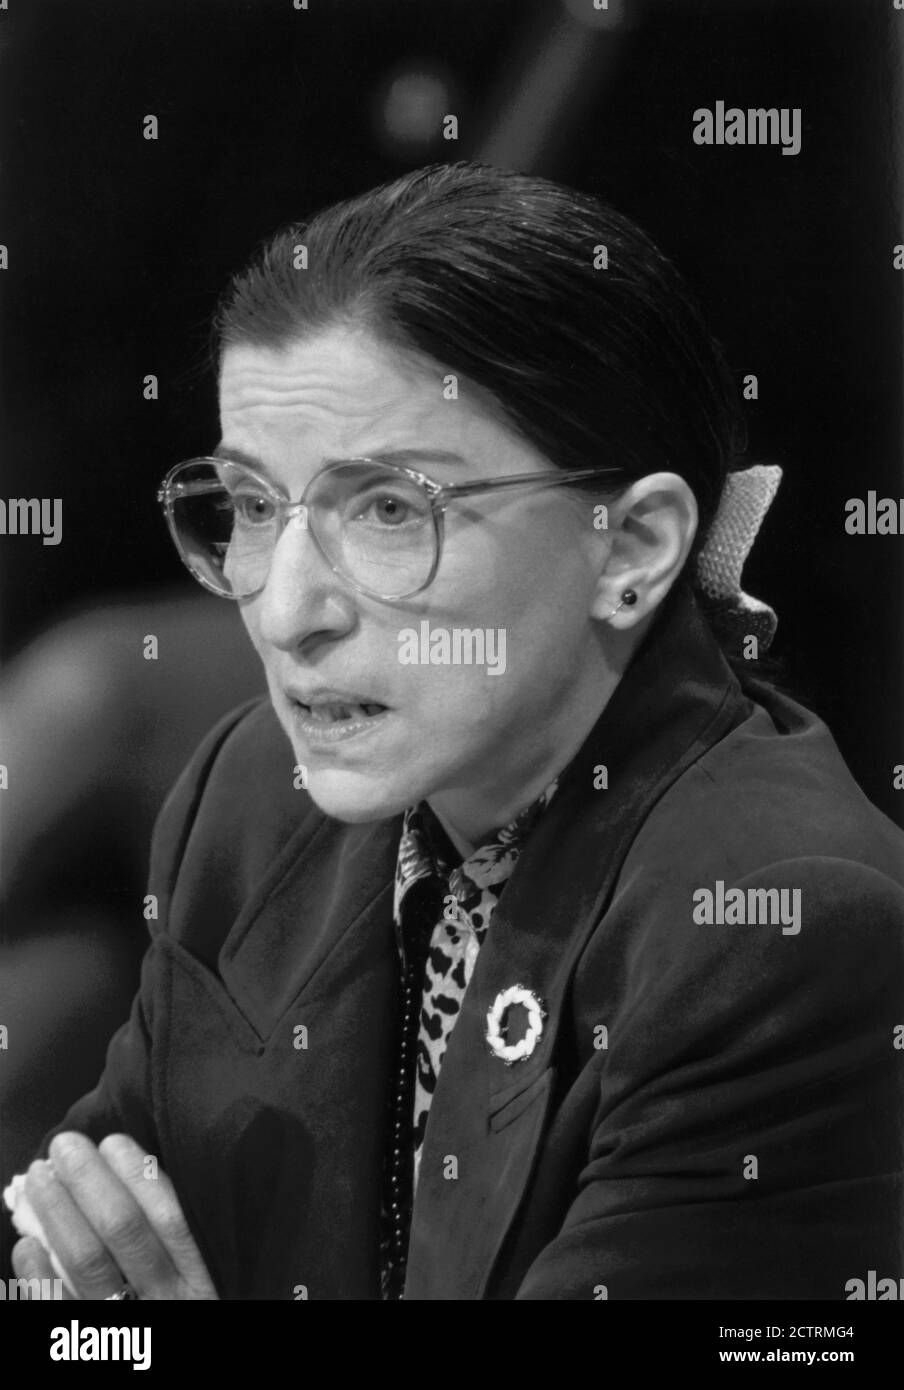 Ruth Bader Ginsburg alla sua audizione di conferma, Head and Beachs Portrait, Washington, D.C., USA, R. Michael Jenkins, Congressional Quarterly, 20 luglio 1993 Foto Stock